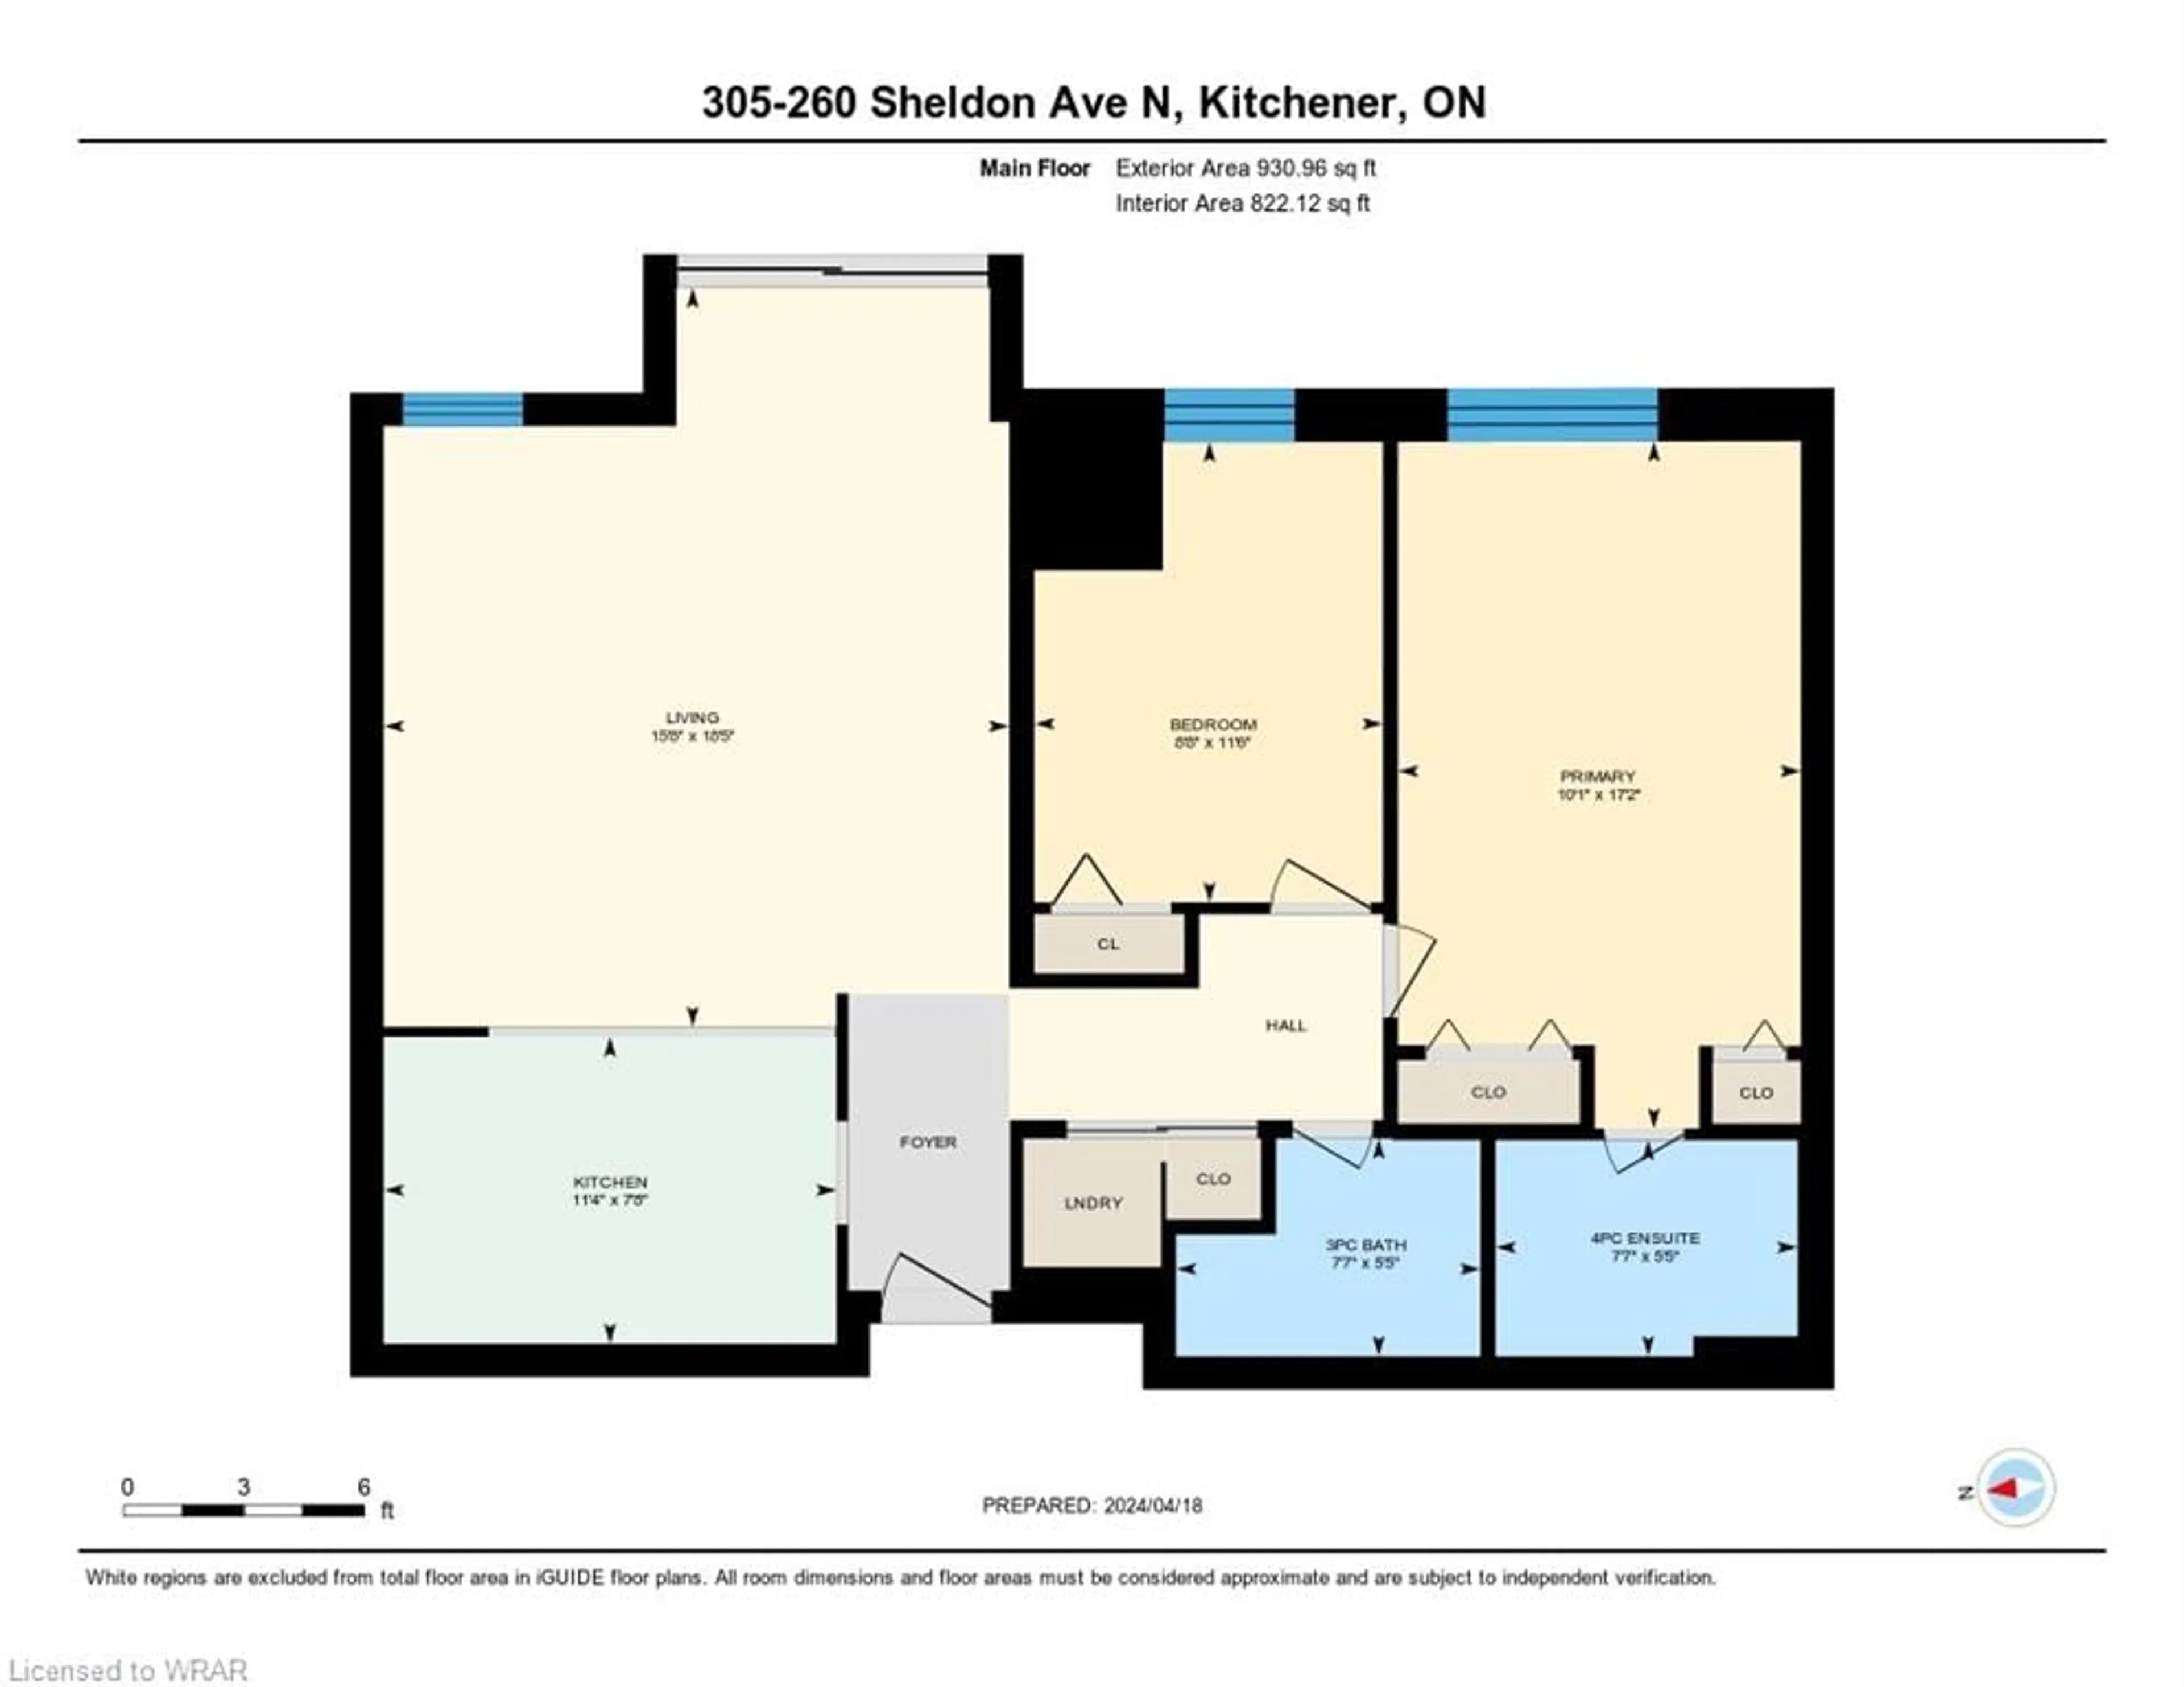 Floor plan for 260 Sheldon Ave #305, Kitchener Ontario N2H 6P2